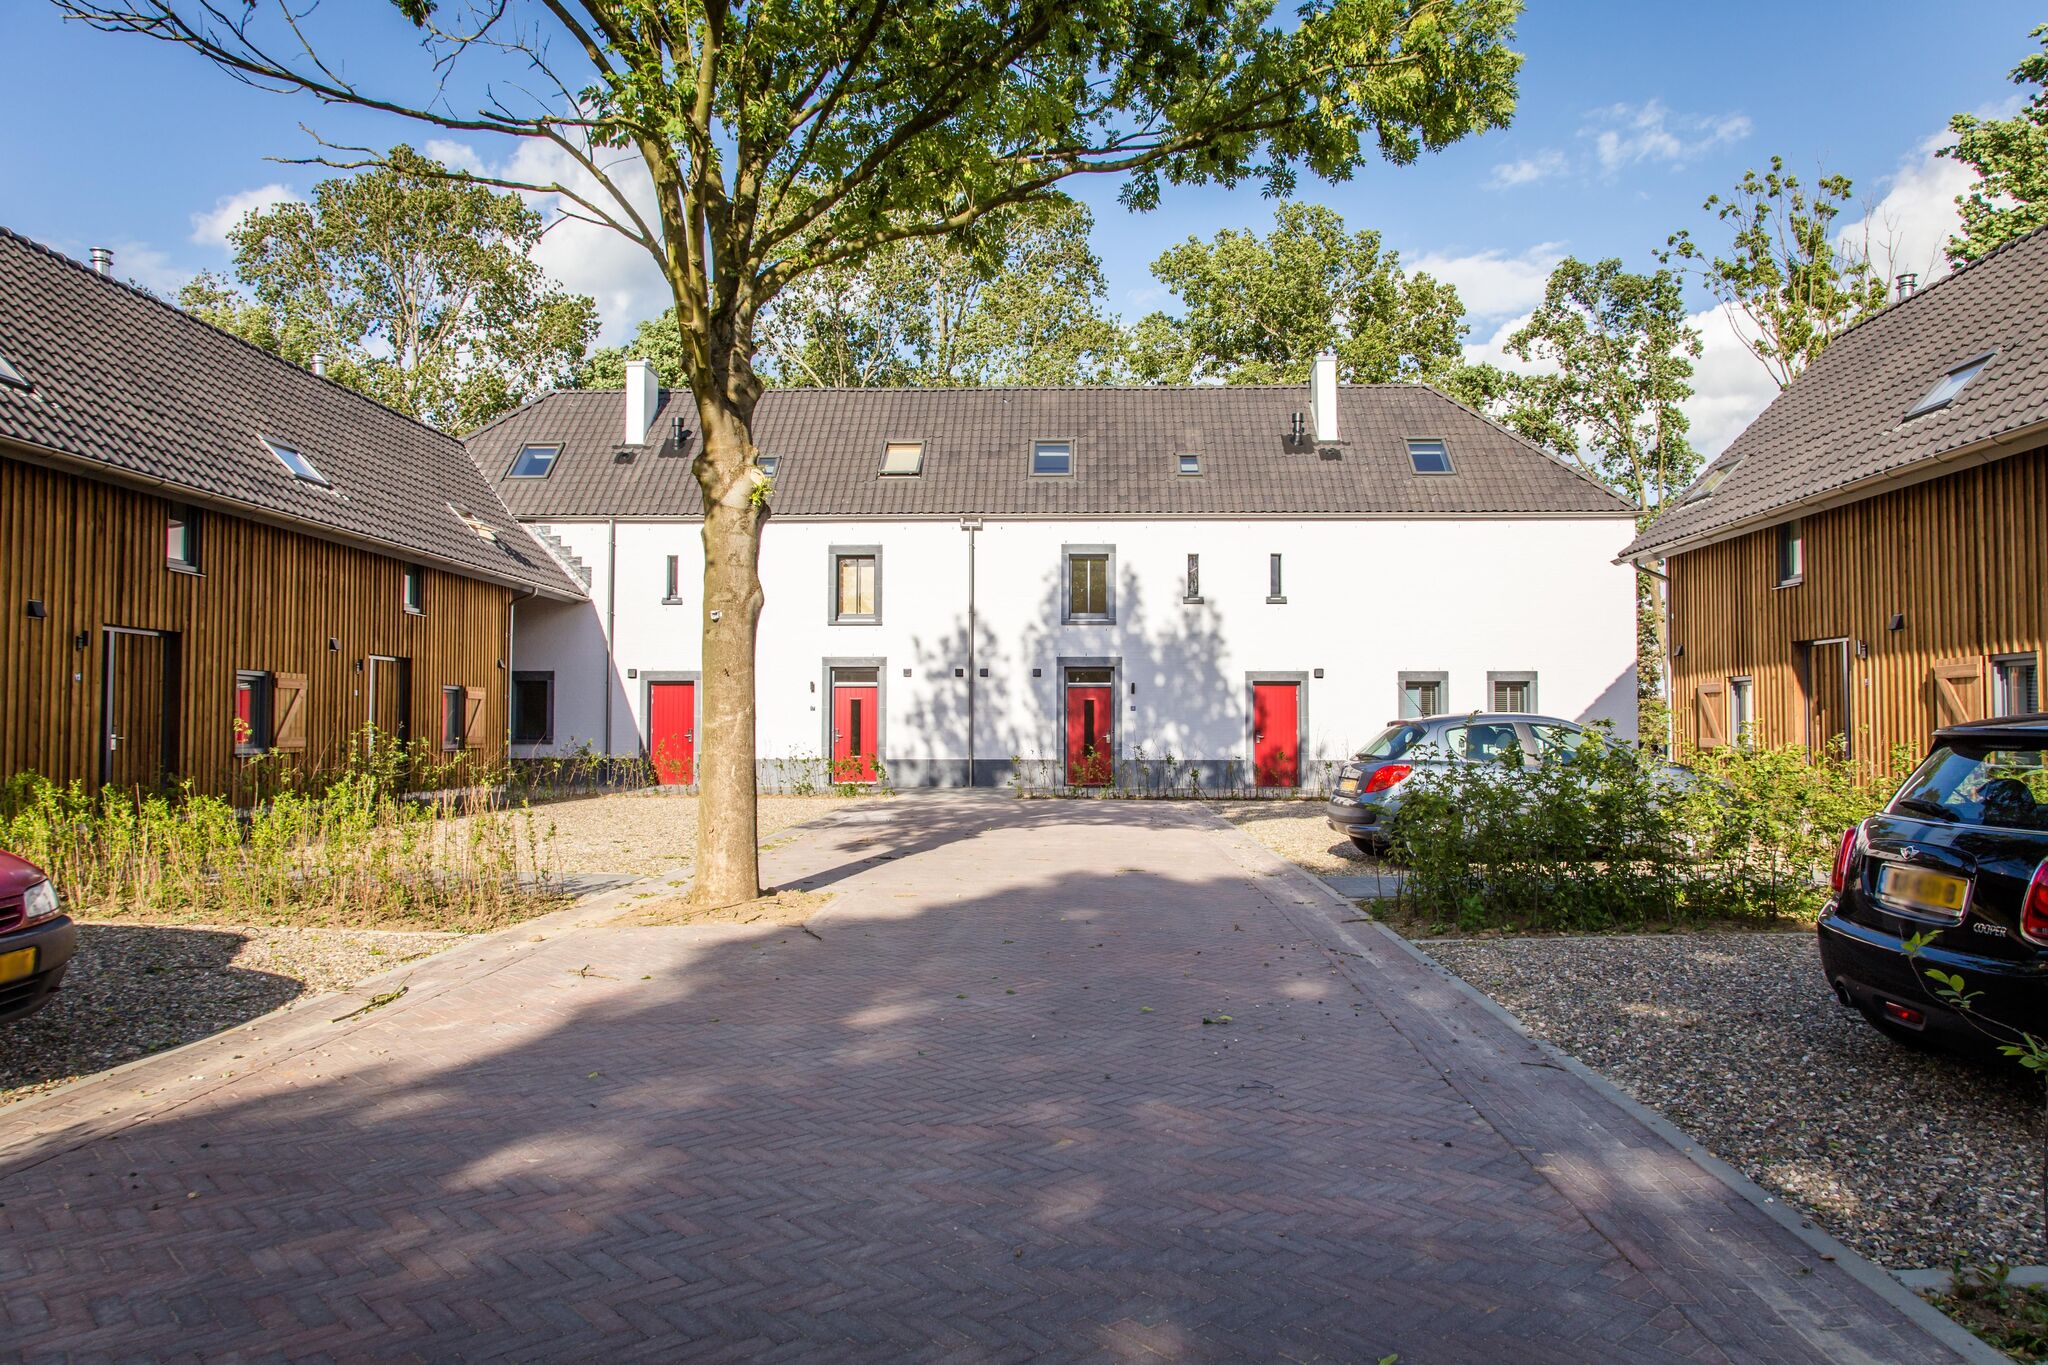 Maison de vacances luxuriante à 4 km de Maastricht